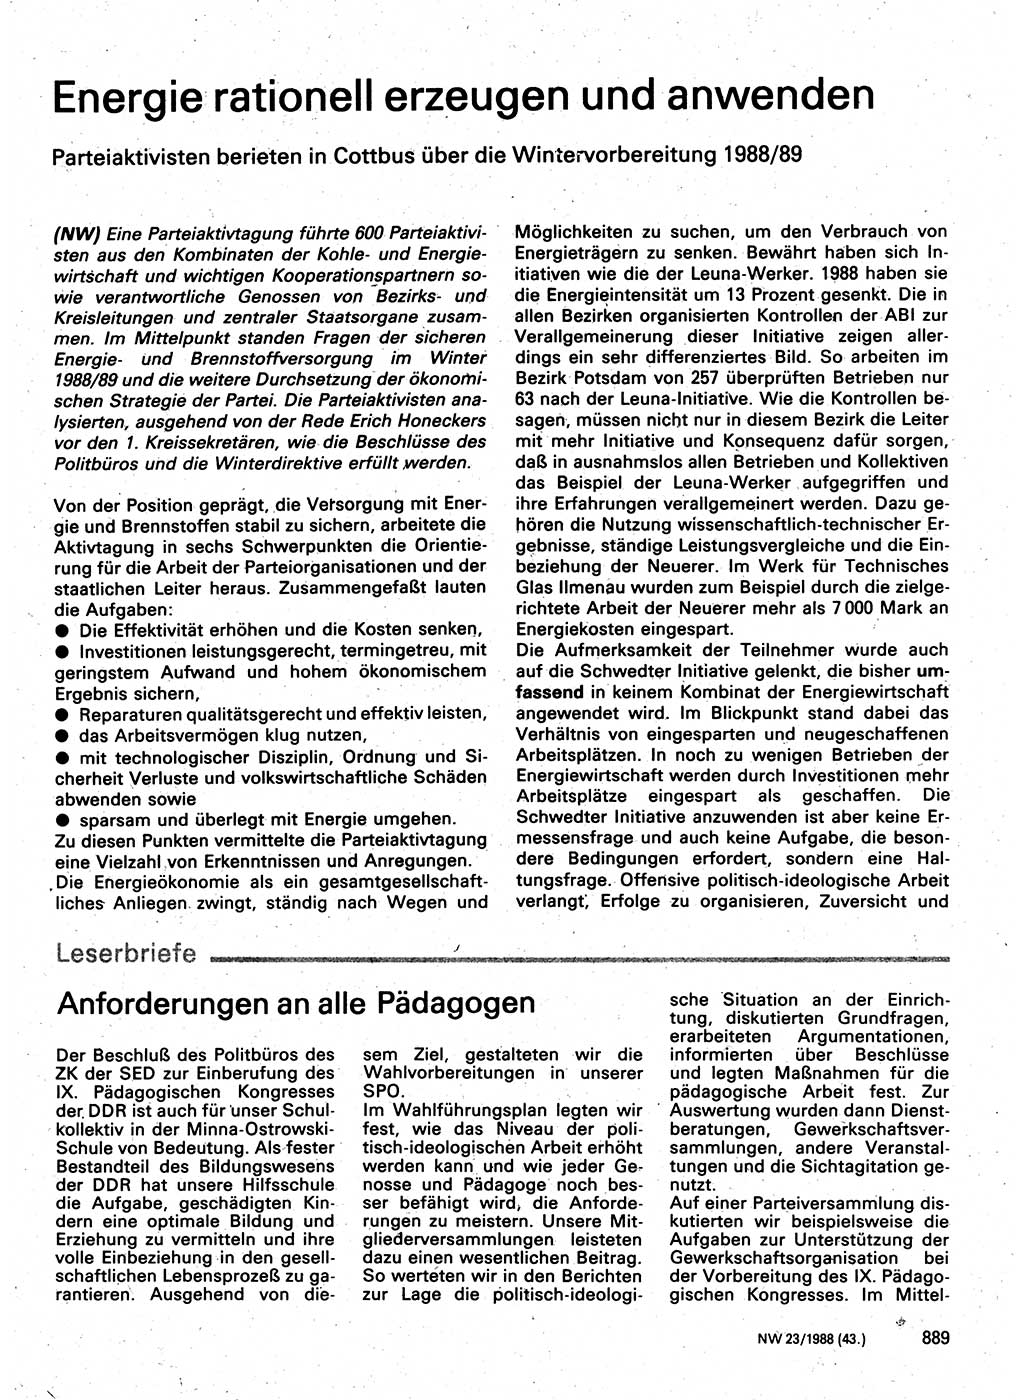 Neuer Weg (NW), Organ des Zentralkomitees (ZK) der SED (Sozialistische Einheitspartei Deutschlands) für Fragen des Parteilebens, 43. Jahrgang [Deutsche Demokratische Republik (DDR)] 1988, Seite 889 (NW ZK SED DDR 1988, S. 889)